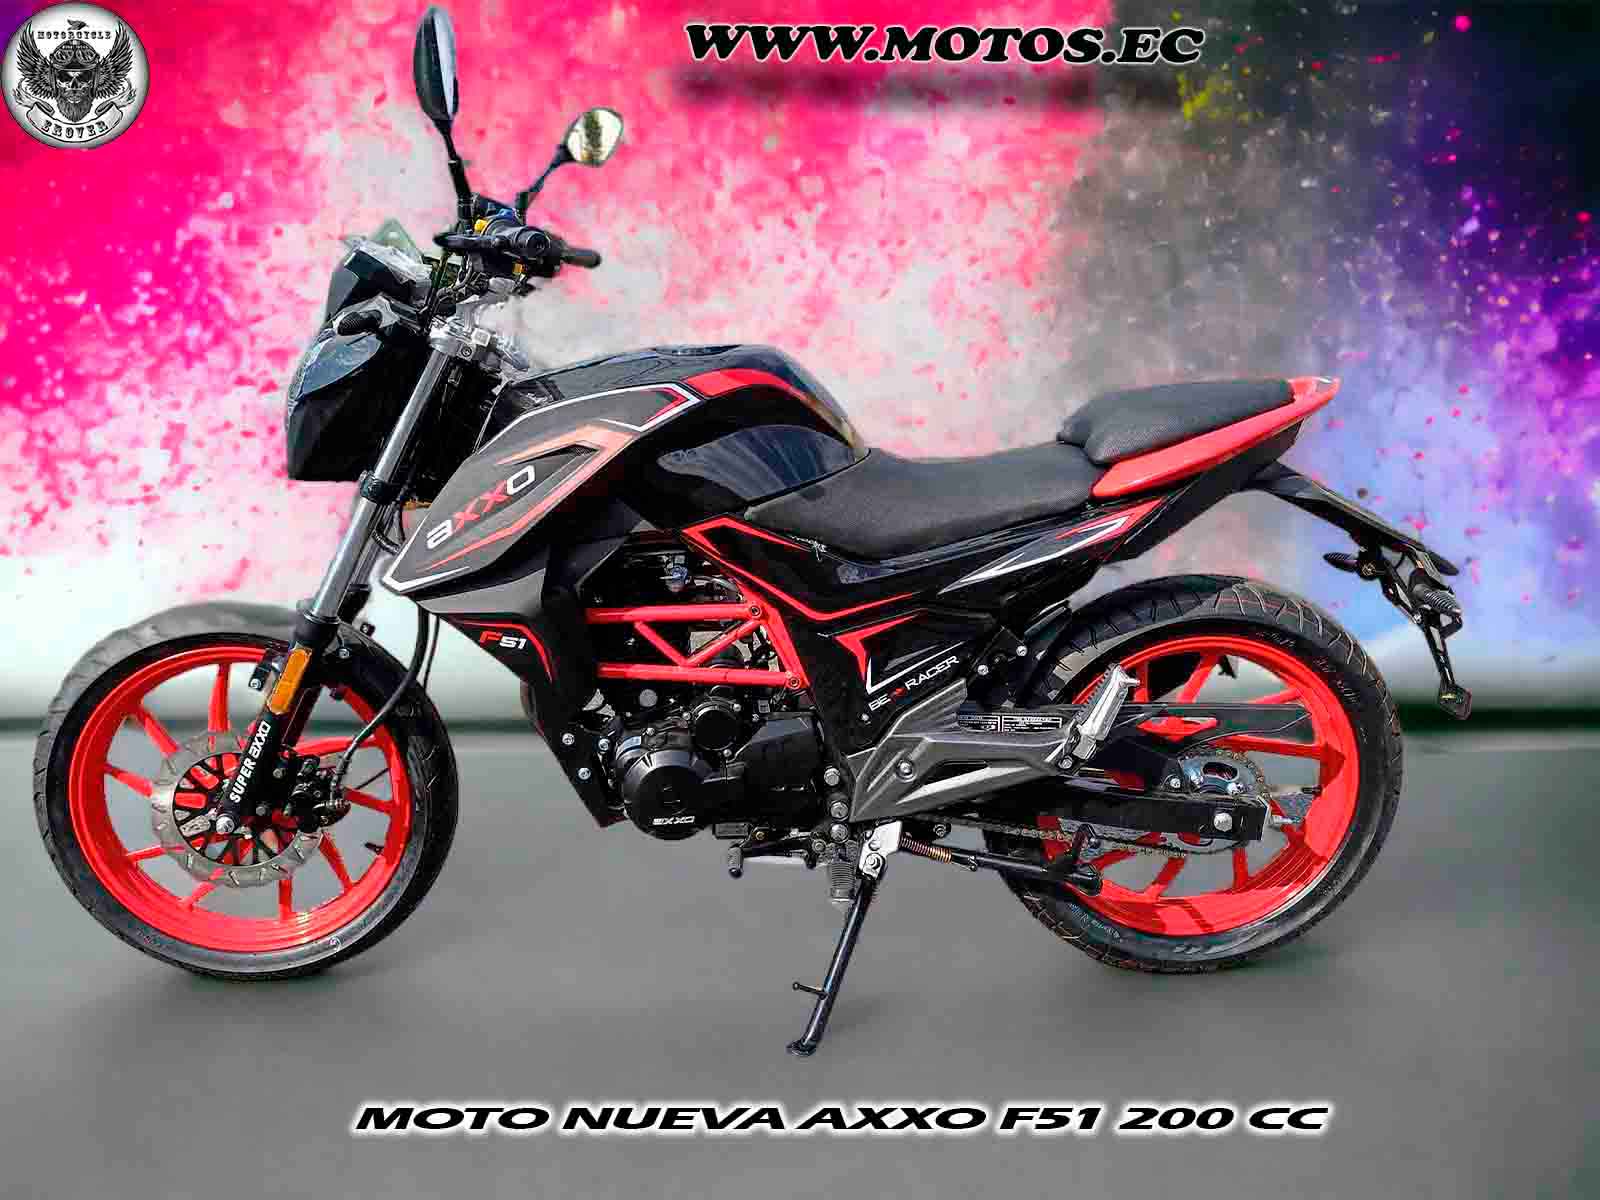 imagen de moto Motos Axxo F51 200